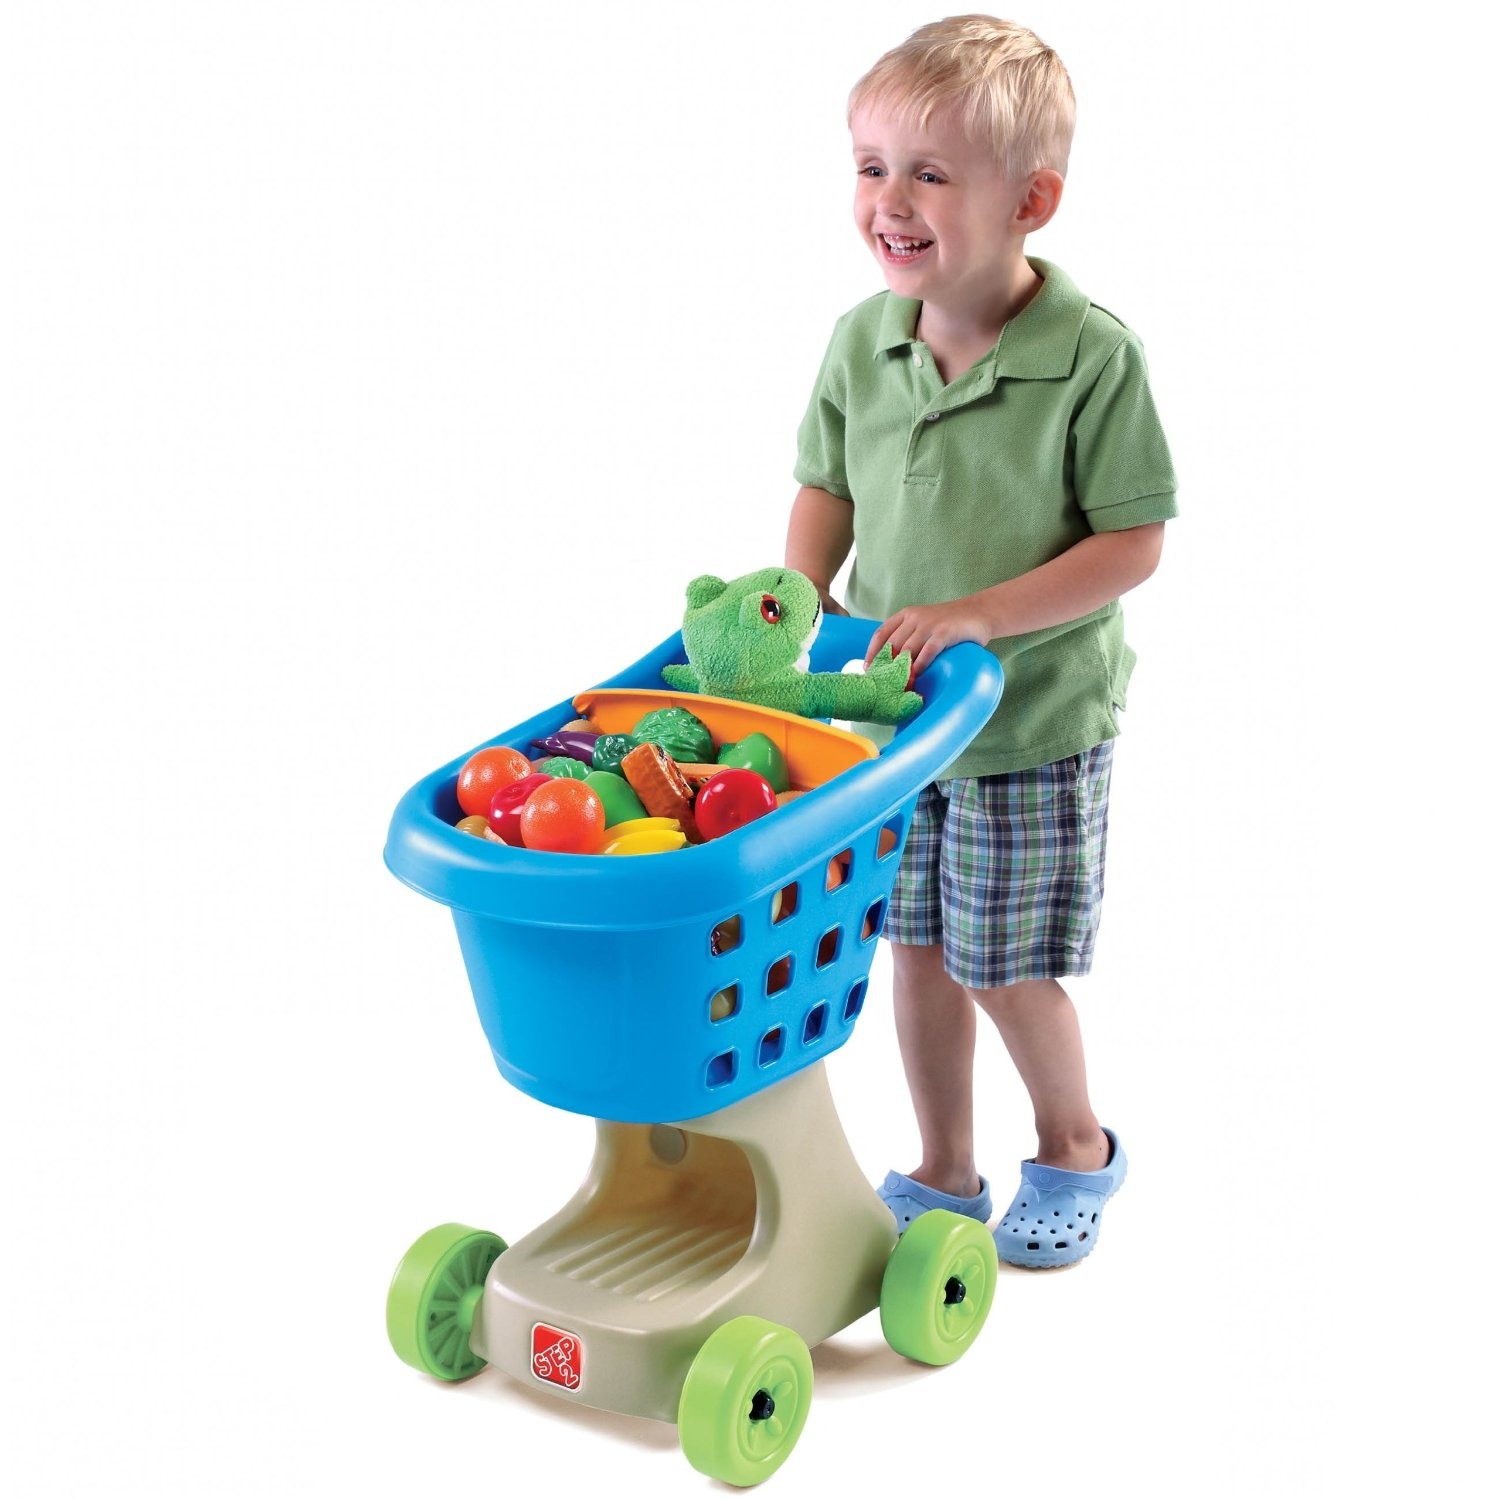 Amazon: Step2 Little Helper’s Shopping Cart Just $20.79! (Reg 34.99)